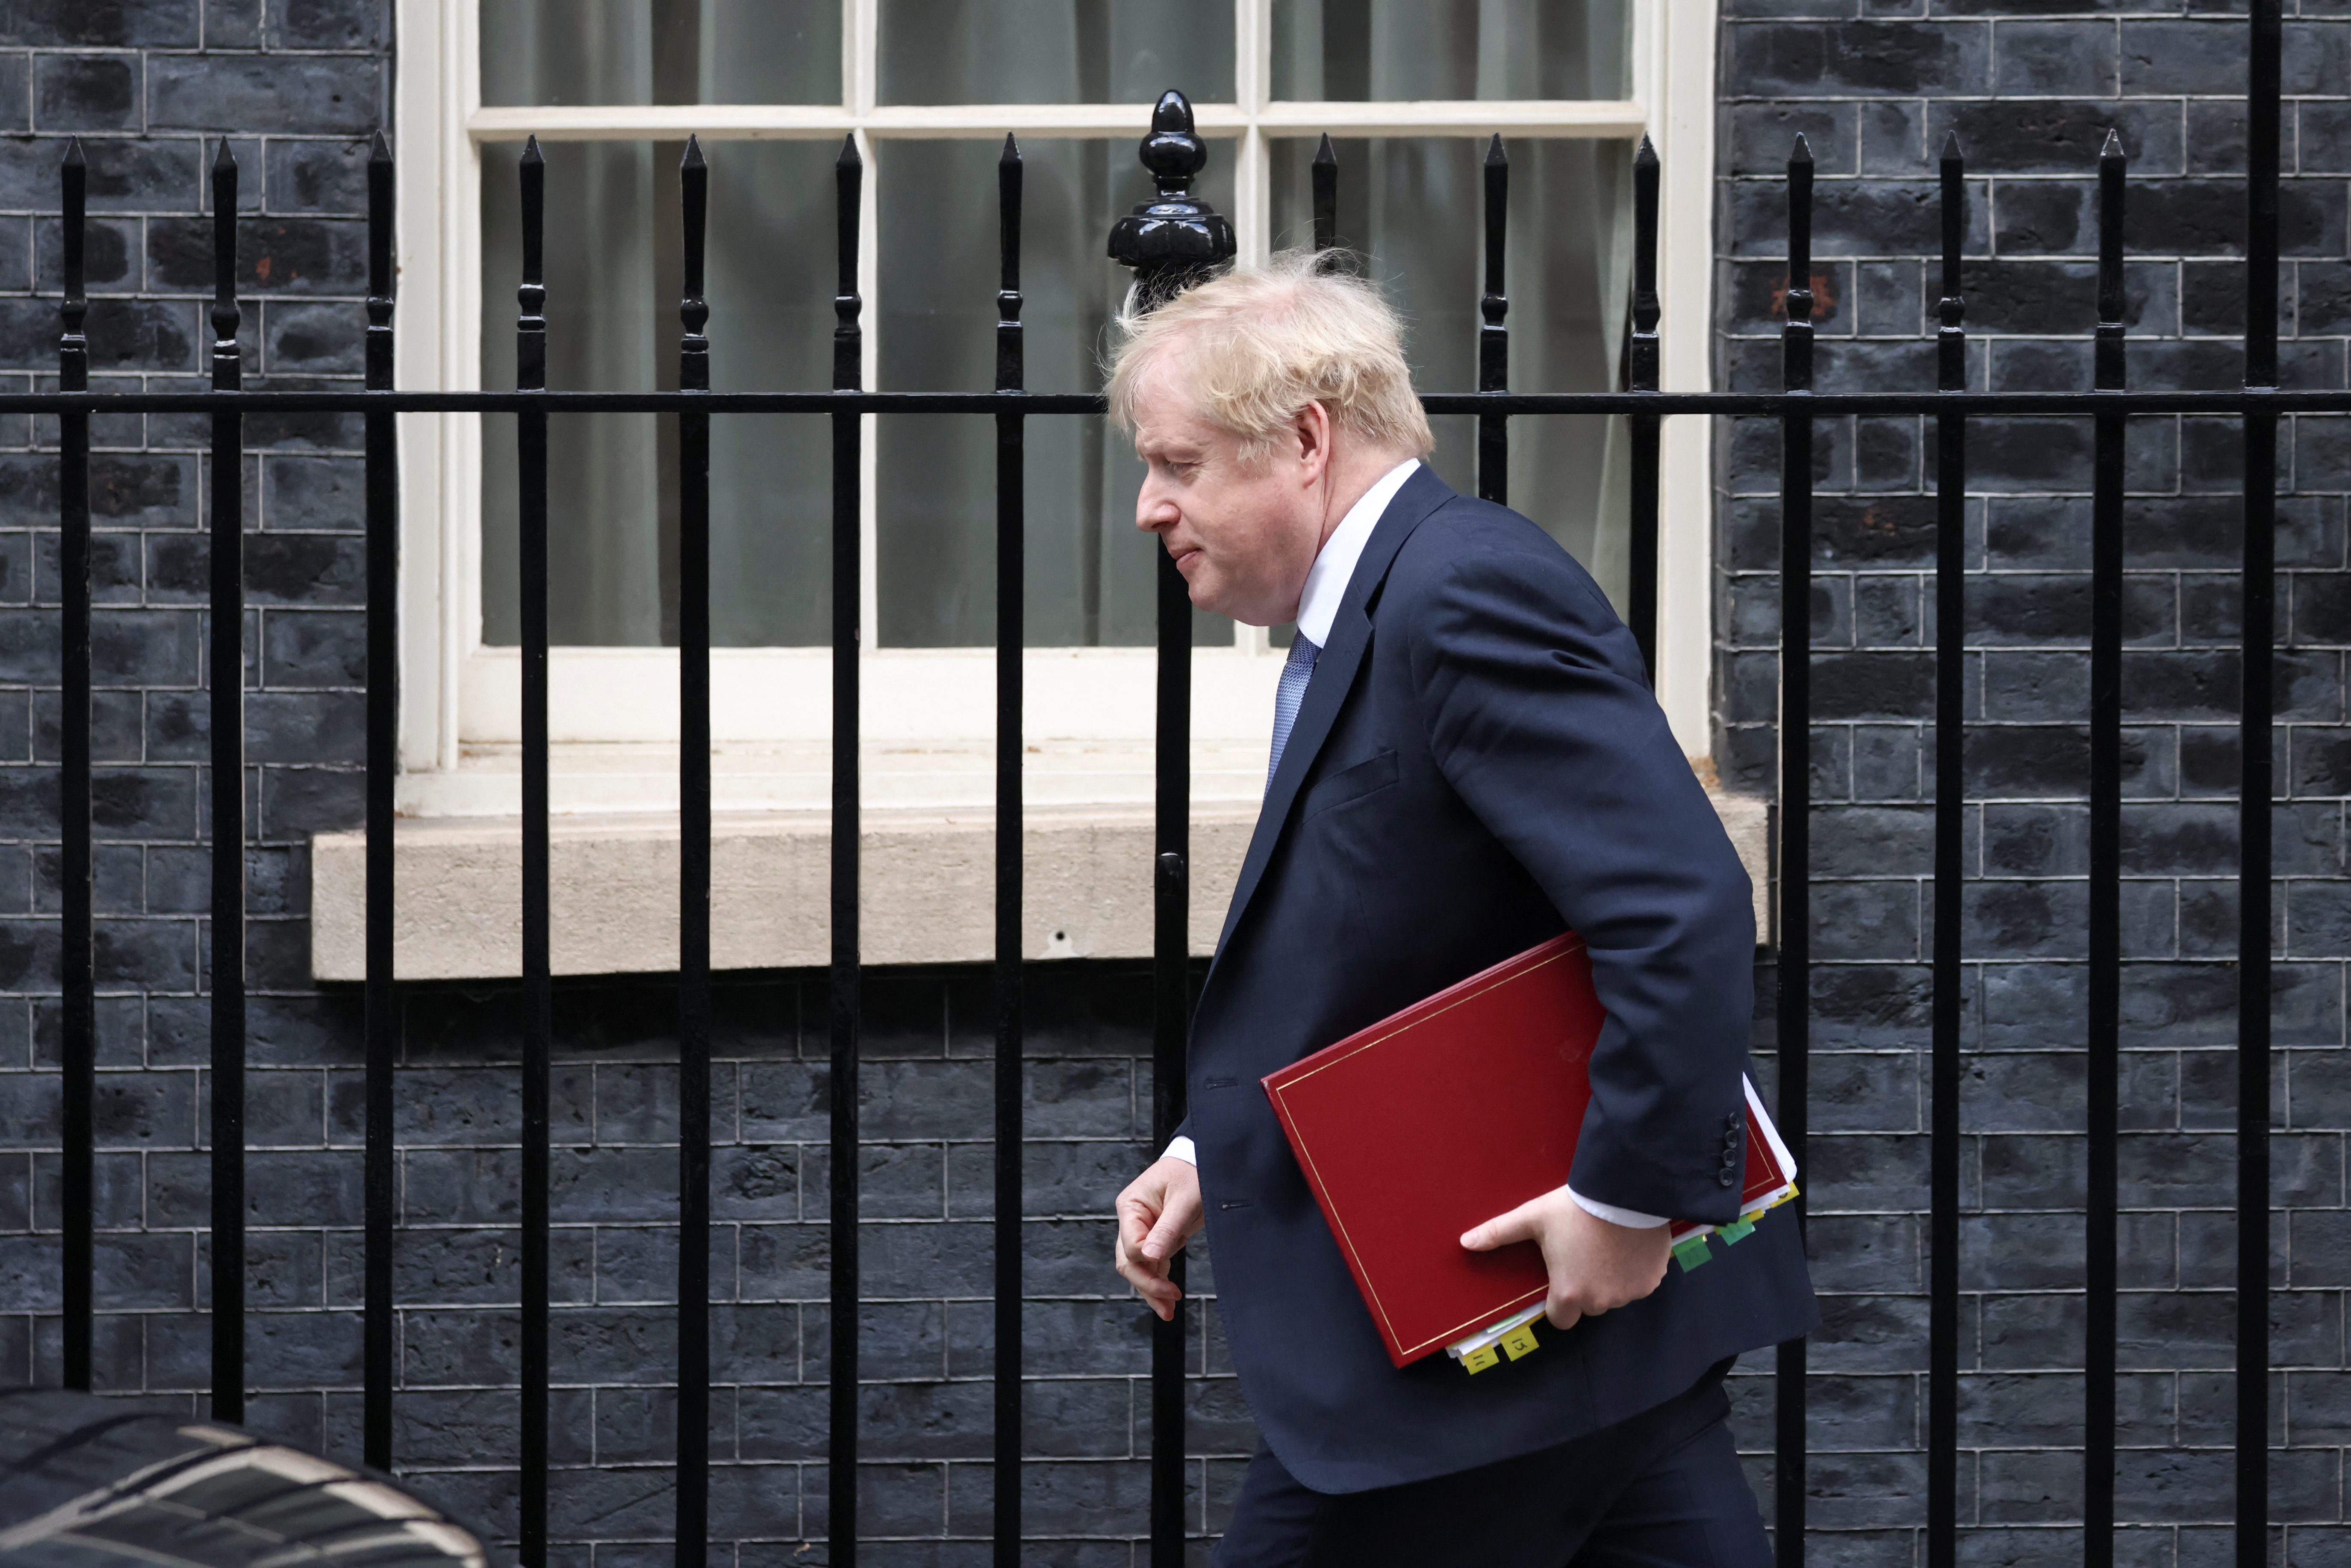 Naglalakad si British Prime Minister Boris Johnson sa labas ng Downing Street sa London, Britain, Pebrero 9, 2022. REUTERS/Tom Nicholson